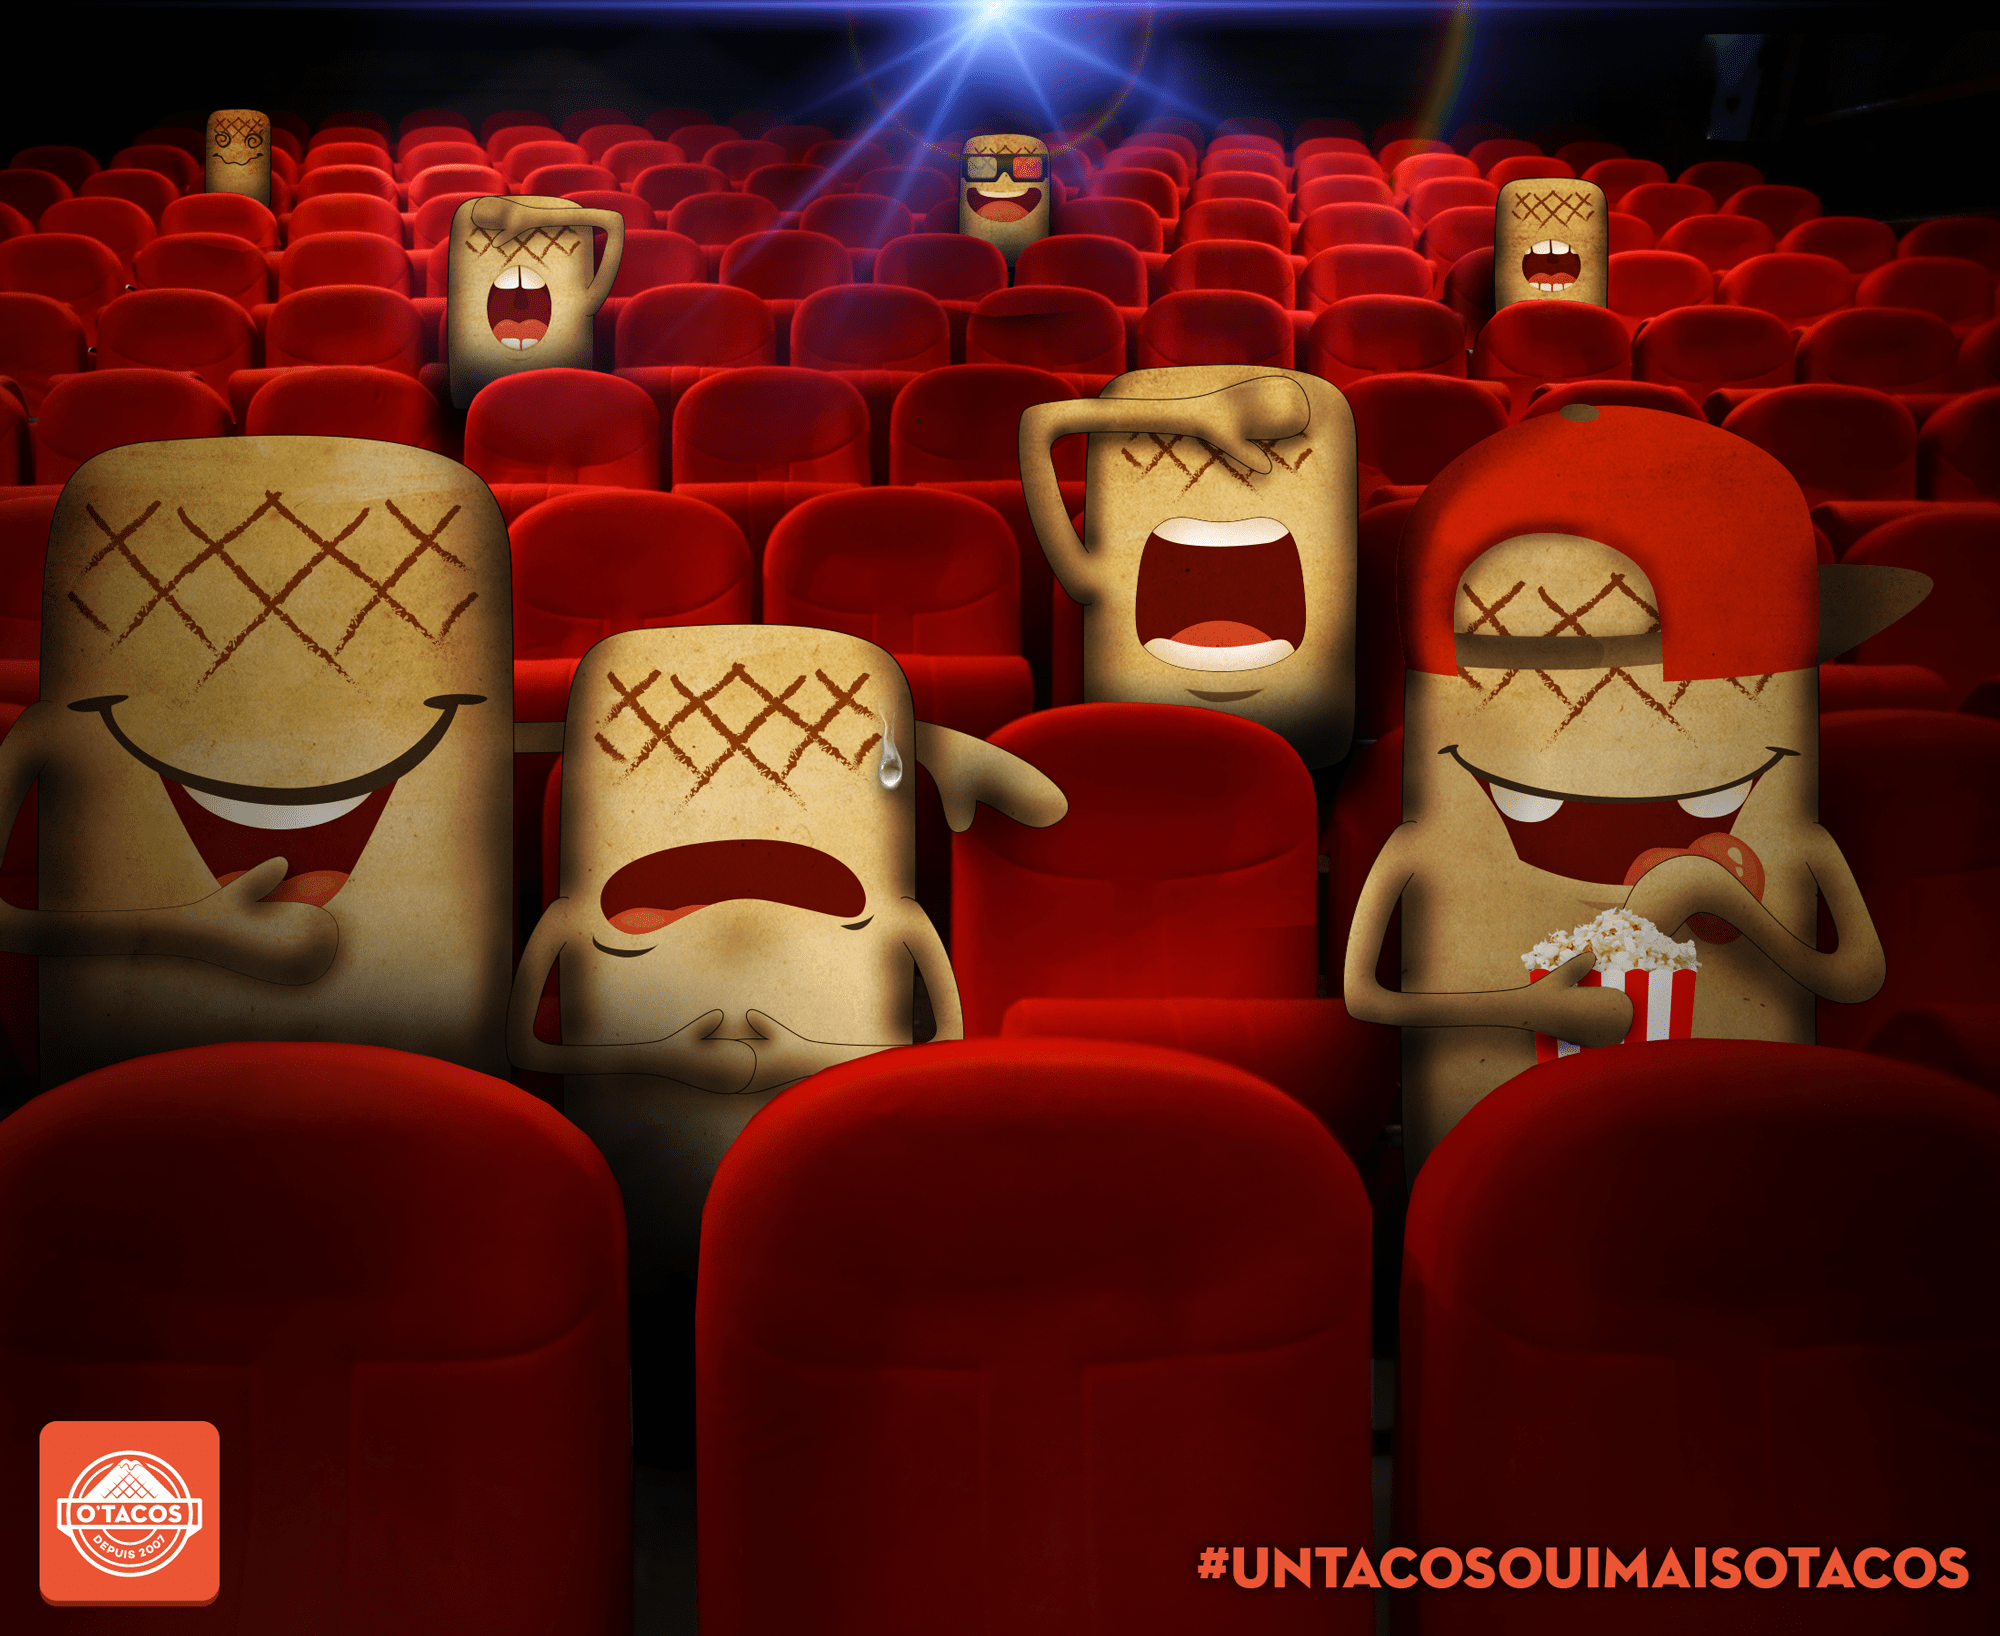 Visuel à destination des réseaux sociaux pour la marque O'Tacos, mettant en avant les mascottes de la marque au cinema.